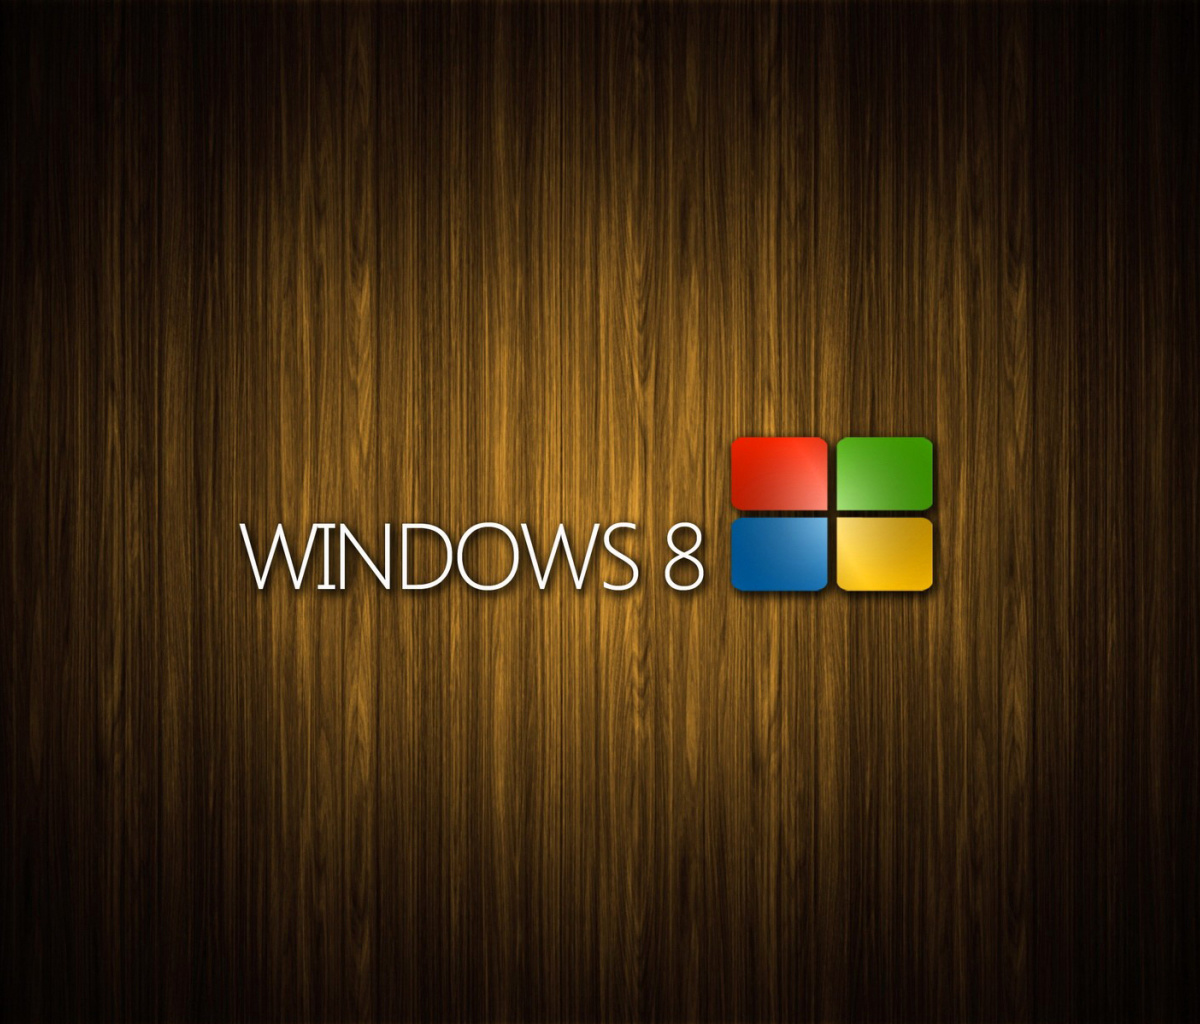 Das Windows 8 Wooden Emblem Wallpaper 1200x1024